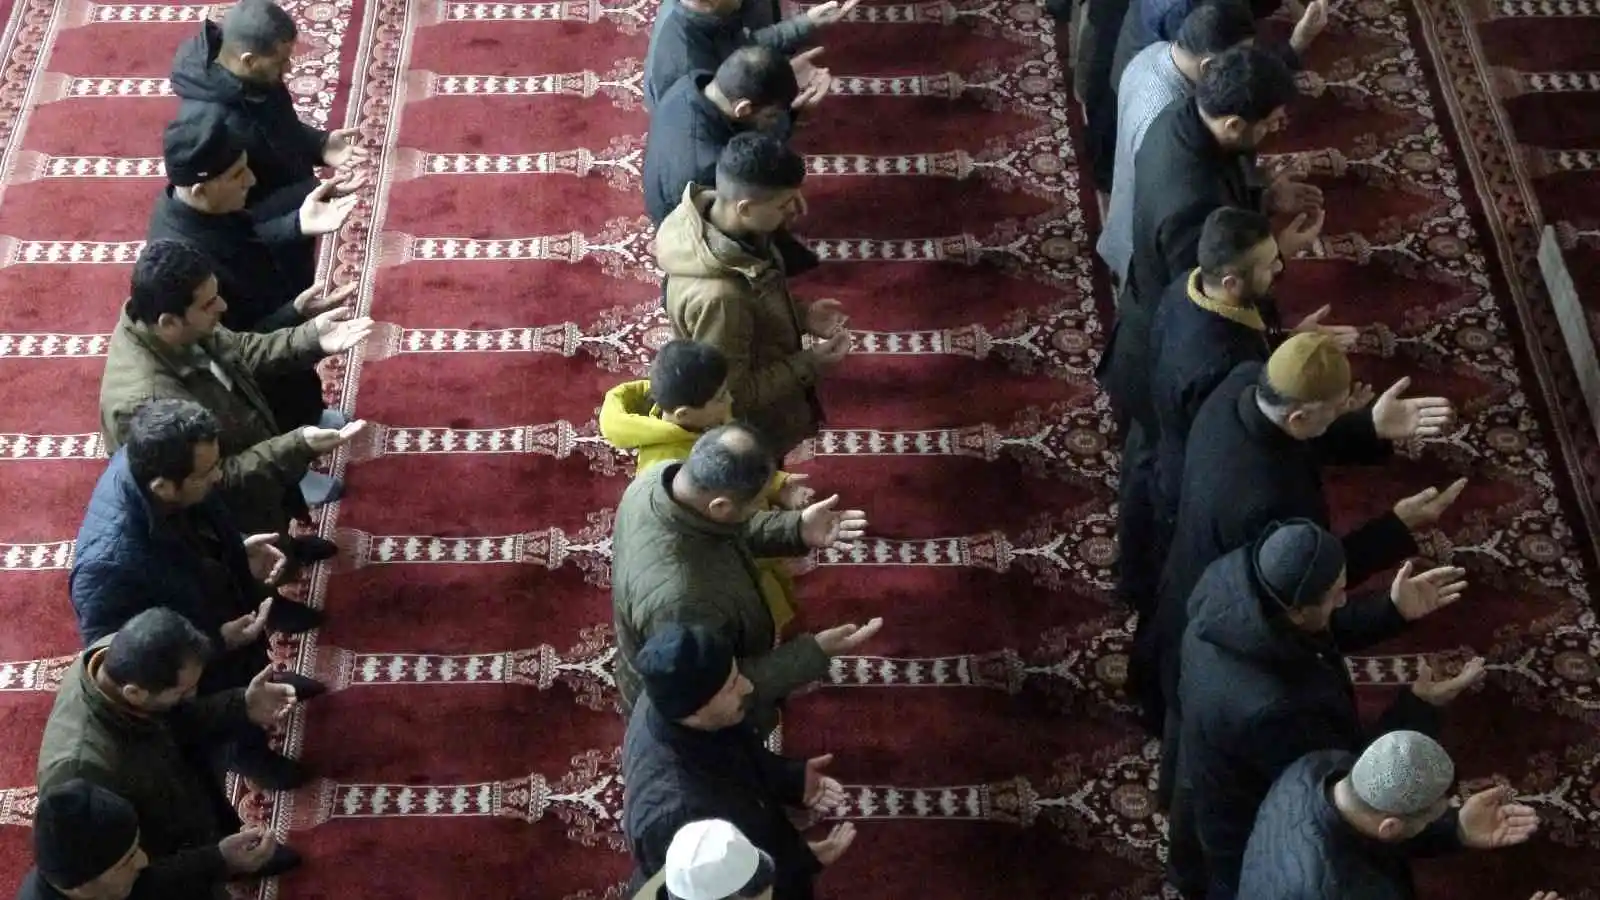 Yüksekovalılar İsveç’te Kur’an-ı Kerim’i yakan Rasmus Paludan’ın çirkin eylemine karşı sabah namazında dualarla tepki gösterdiler
